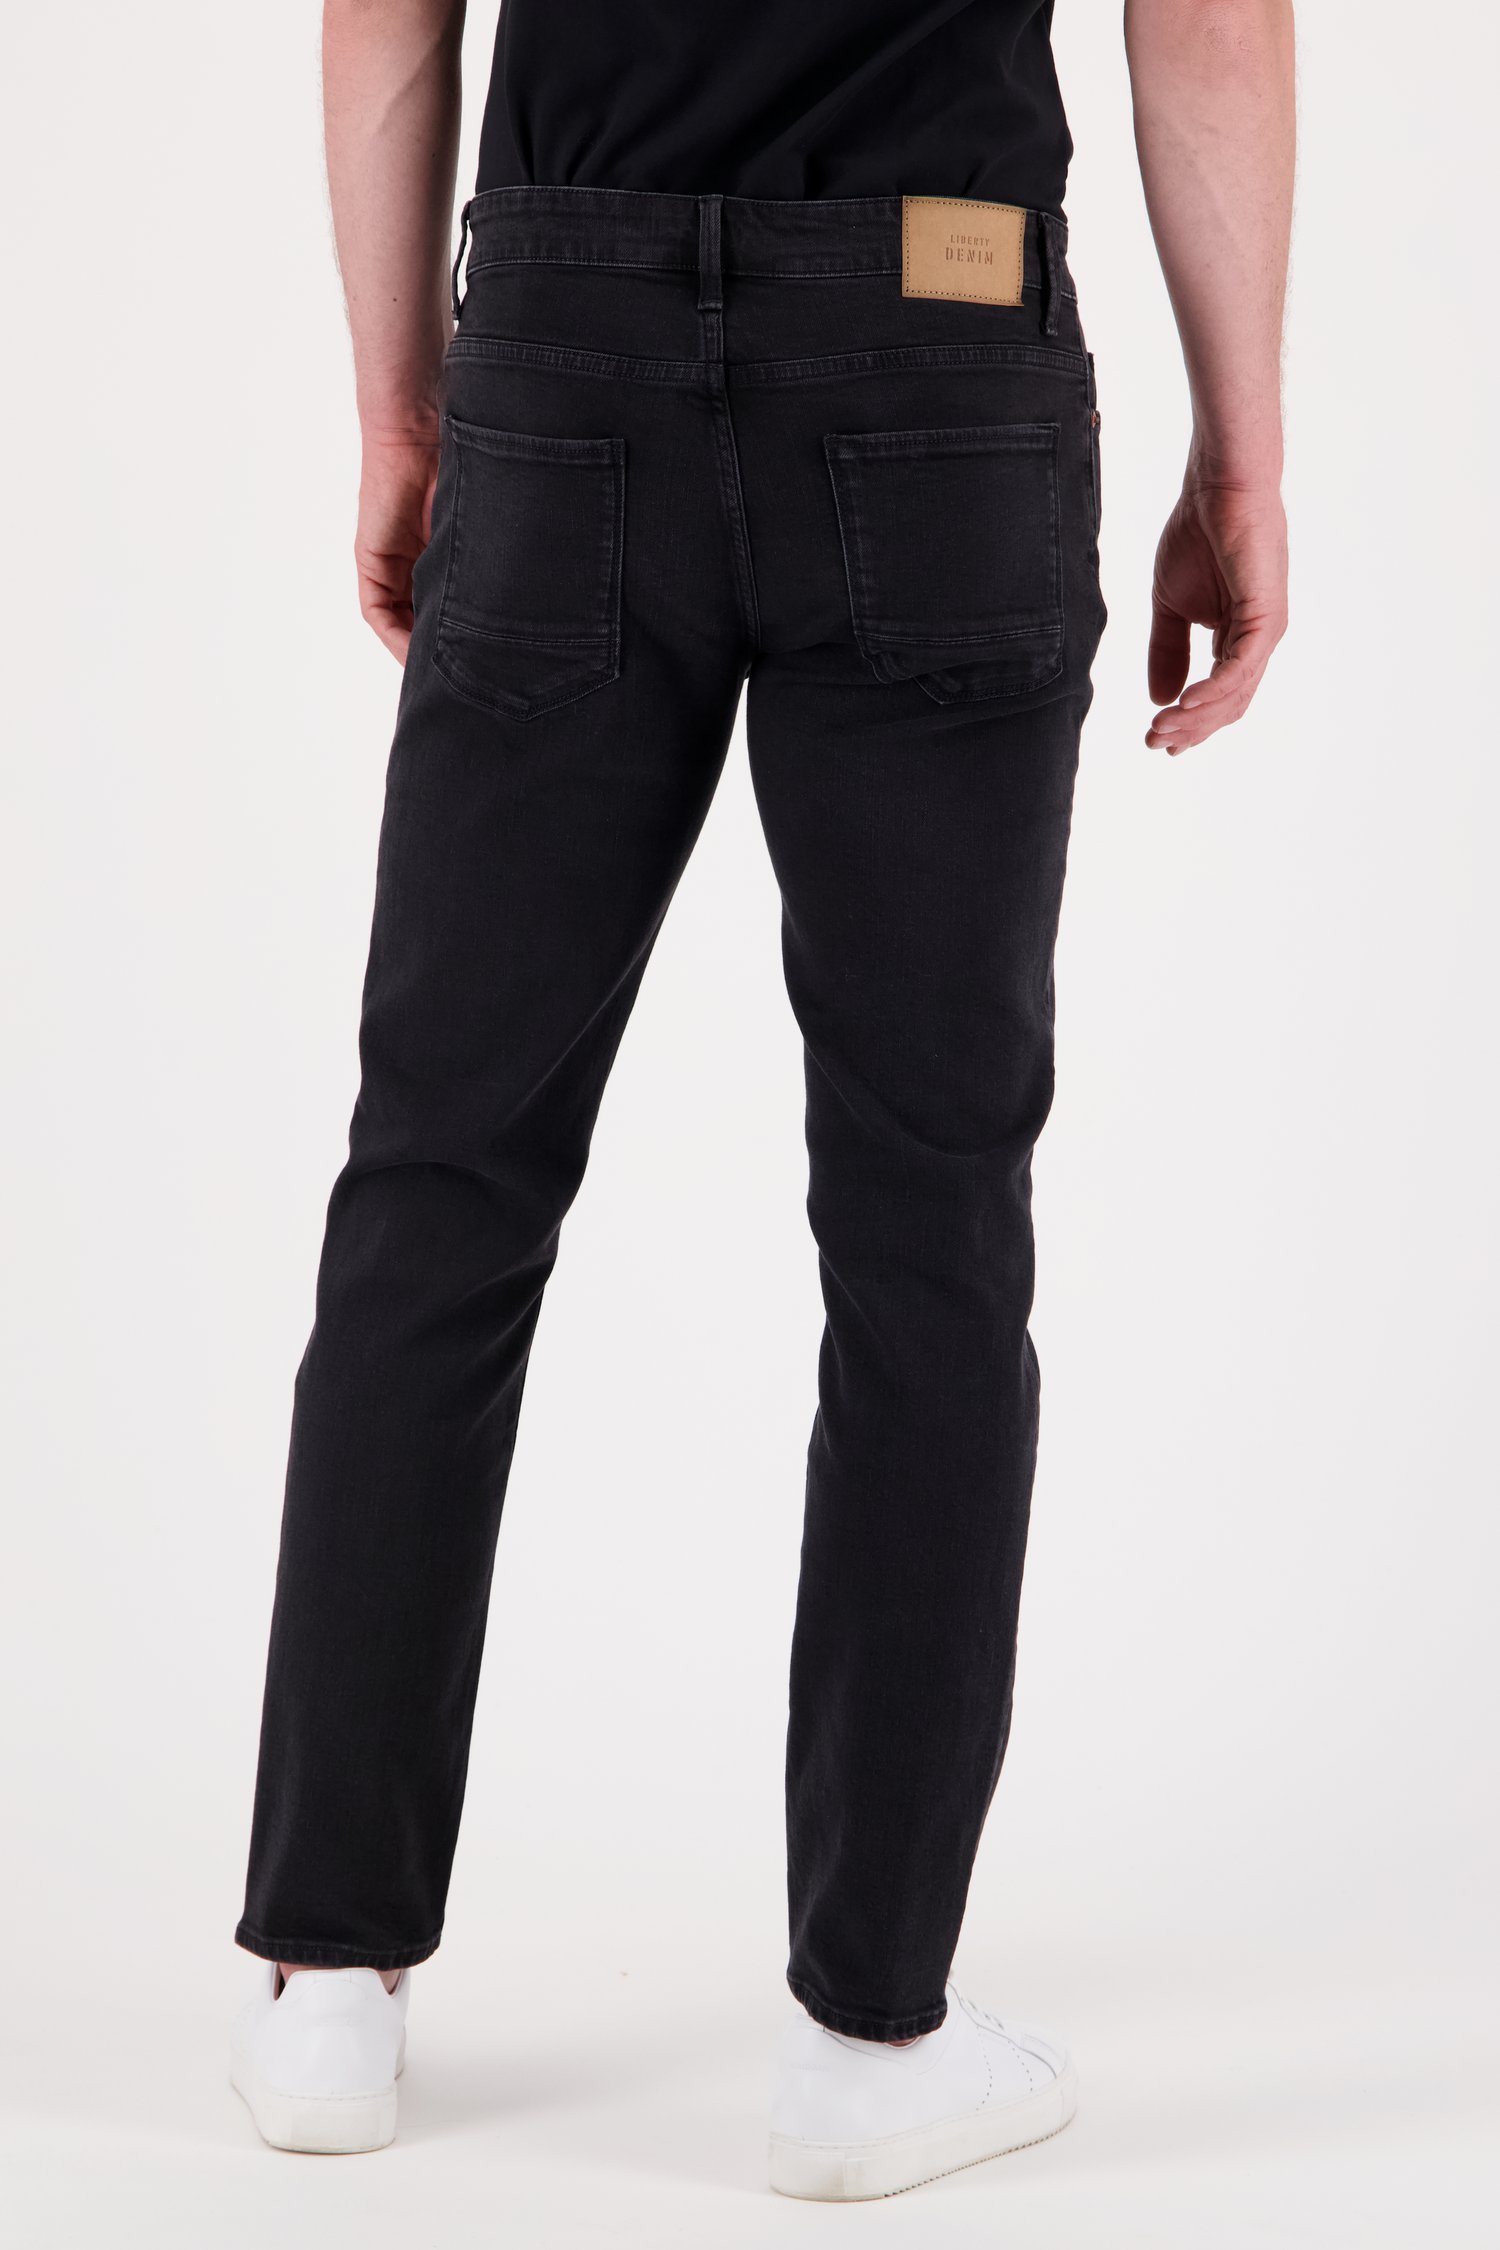 Zwarte jeans - Tim - slim fit - L32 van Liberty Island Denim voor Heren